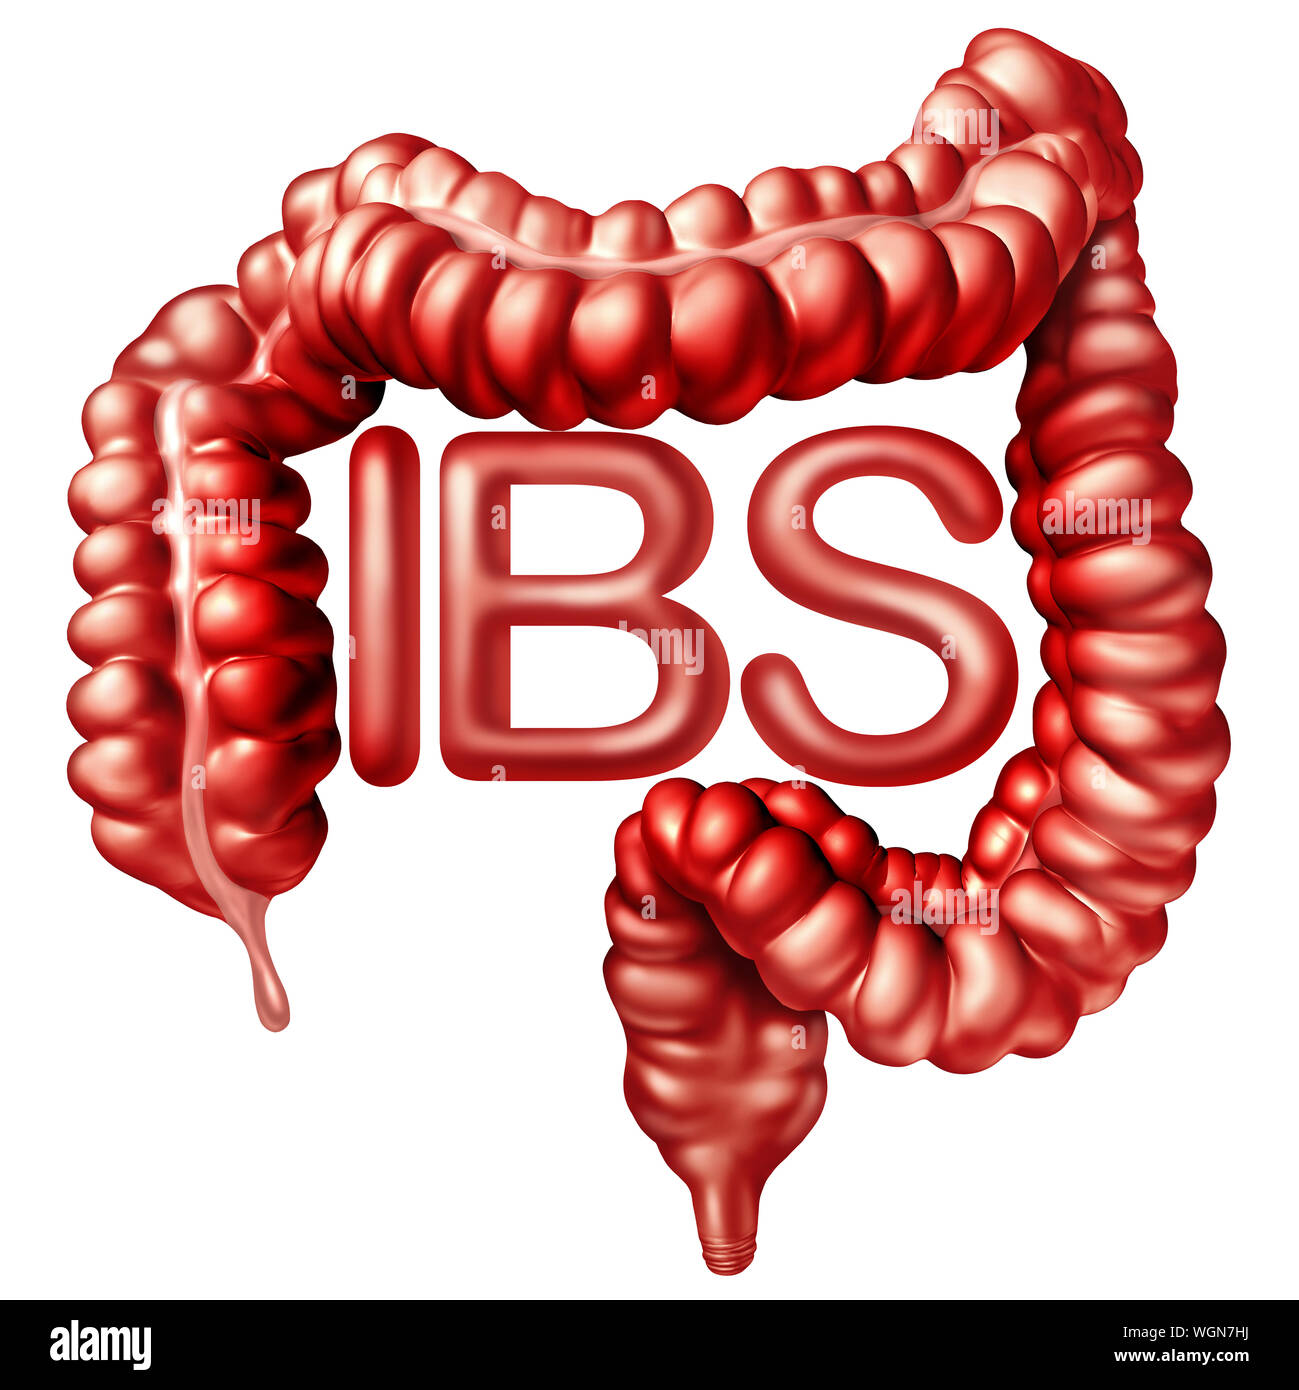 IBS medizinisches Konzept als schmerzhafte Verdauung oder Reizdarm und Darm Schmerzen oder intestinale Beschwerden Entzündung Problem oder Verstopfung. Stockfoto